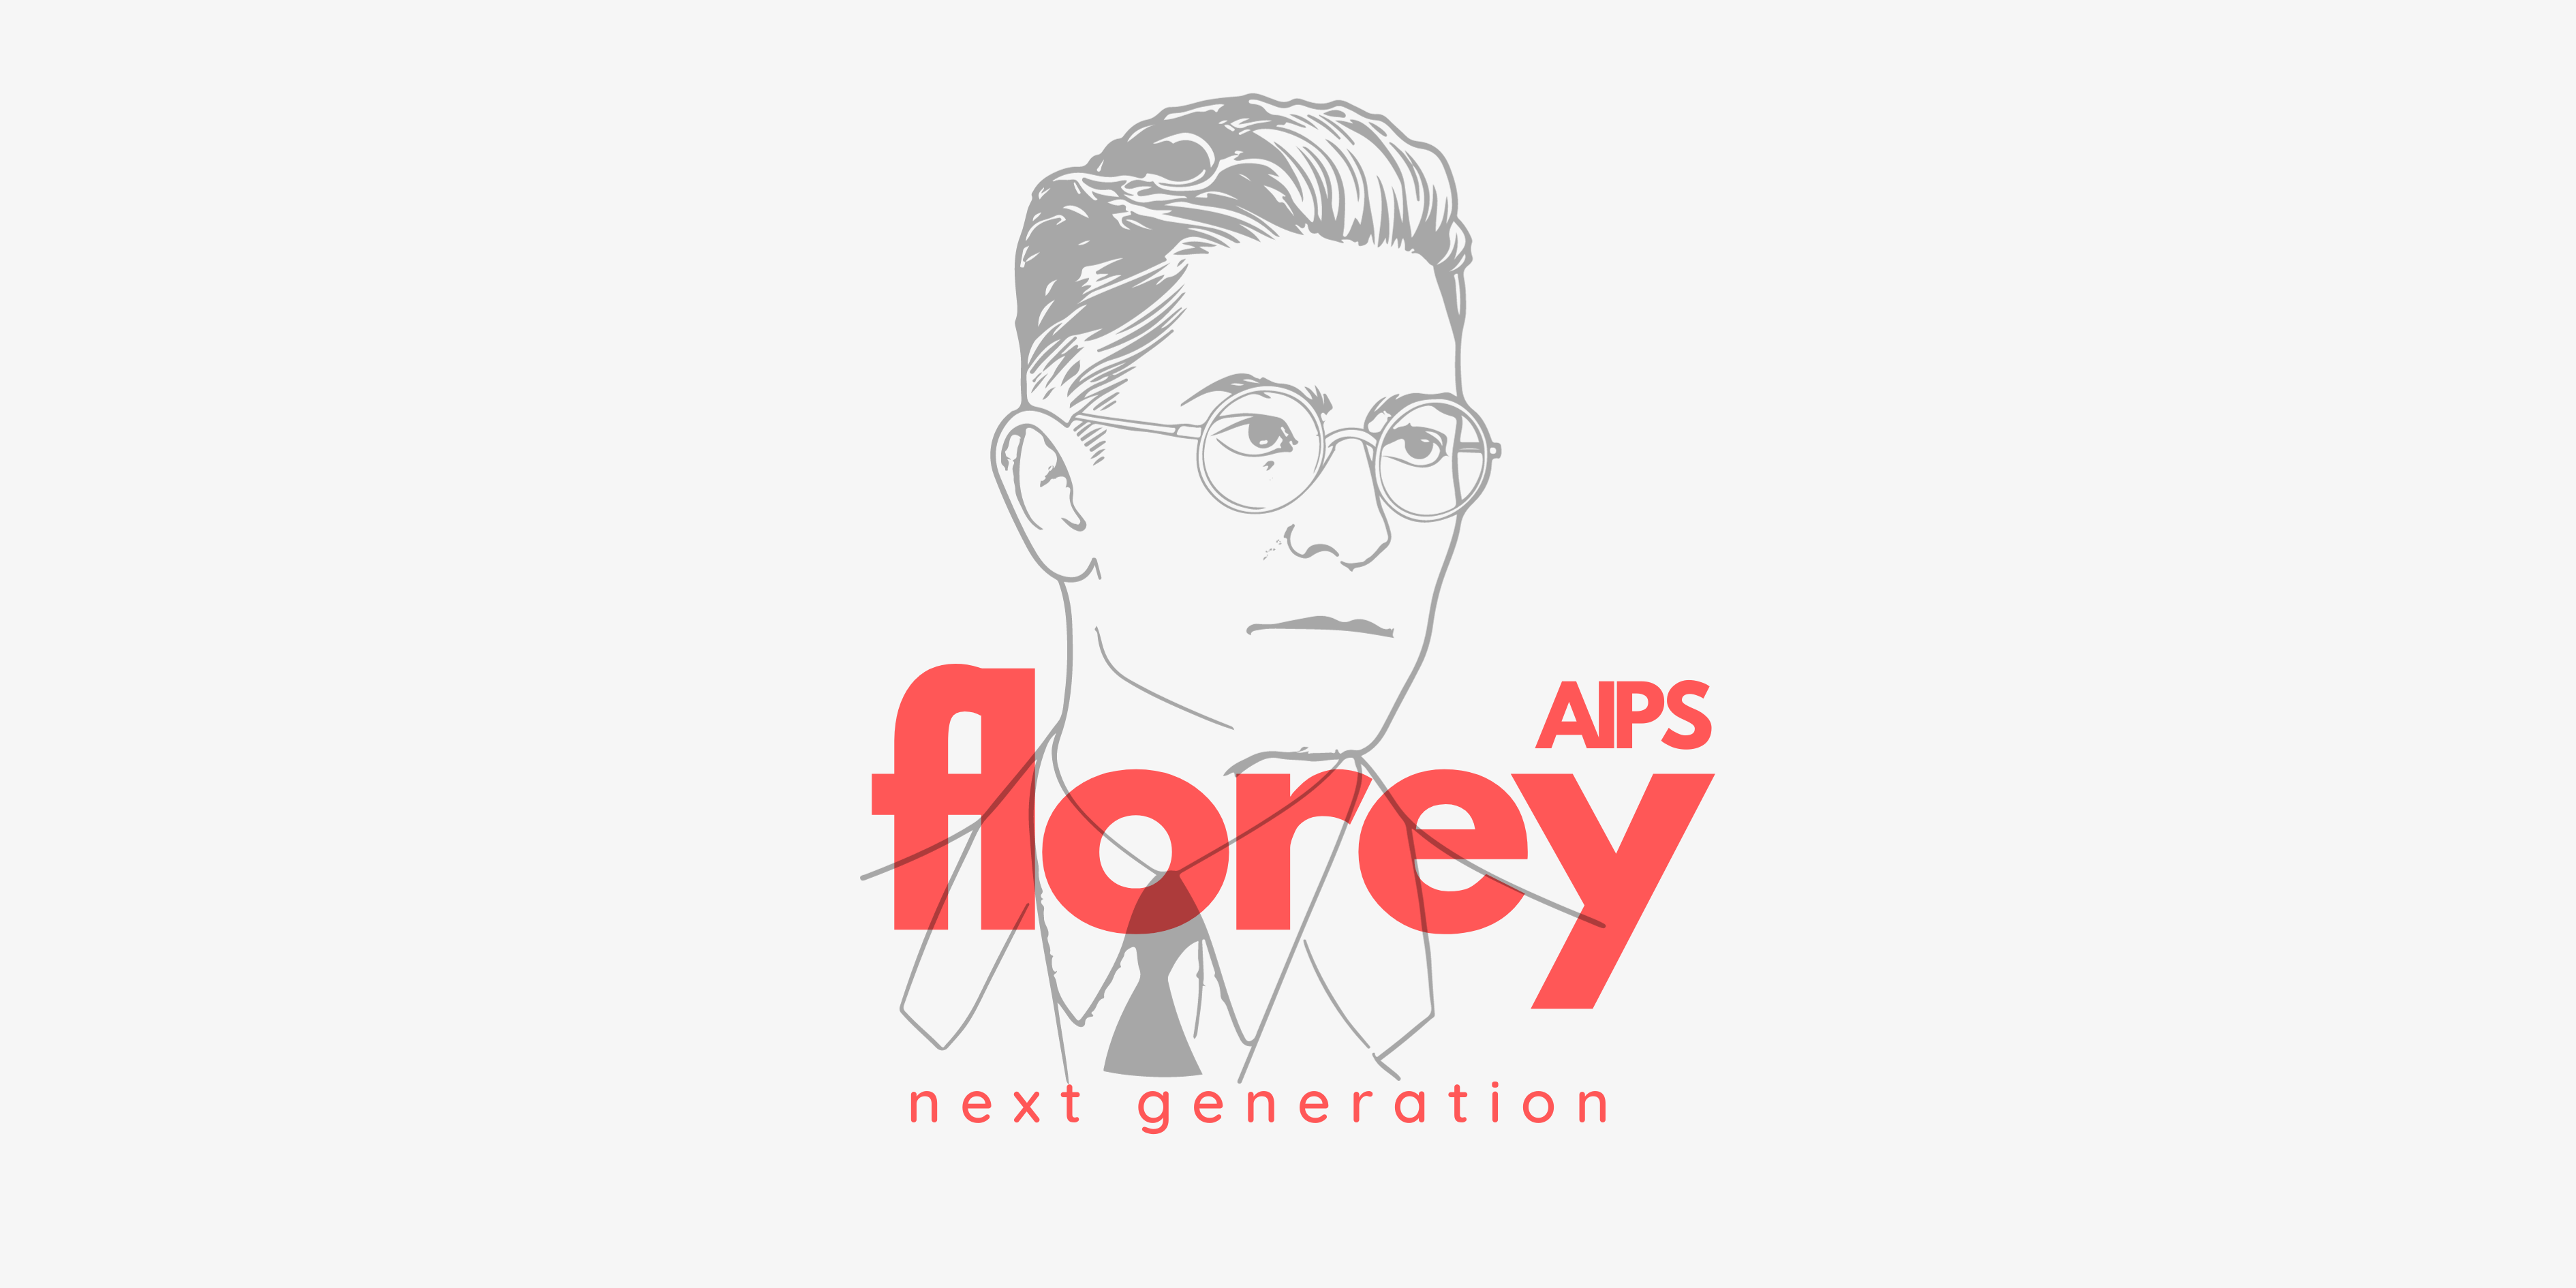 AIPS Florey Next Generation Award